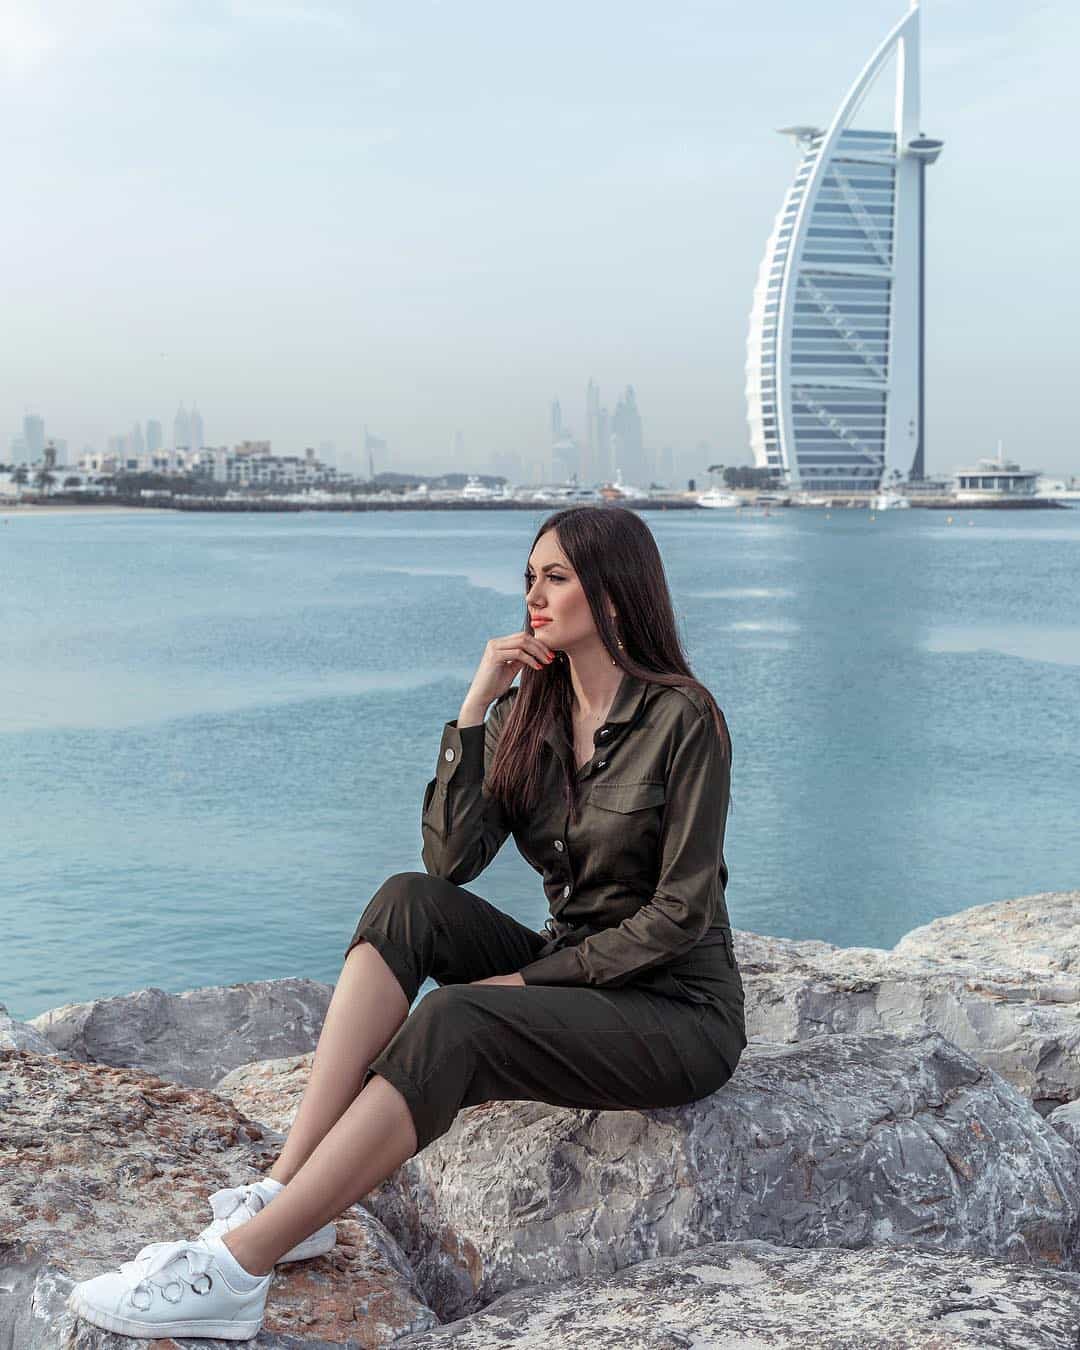 Красивая девушка сидит на камнях на побережье Дубая около пятизвездочного отеля Бурж аль Араб.